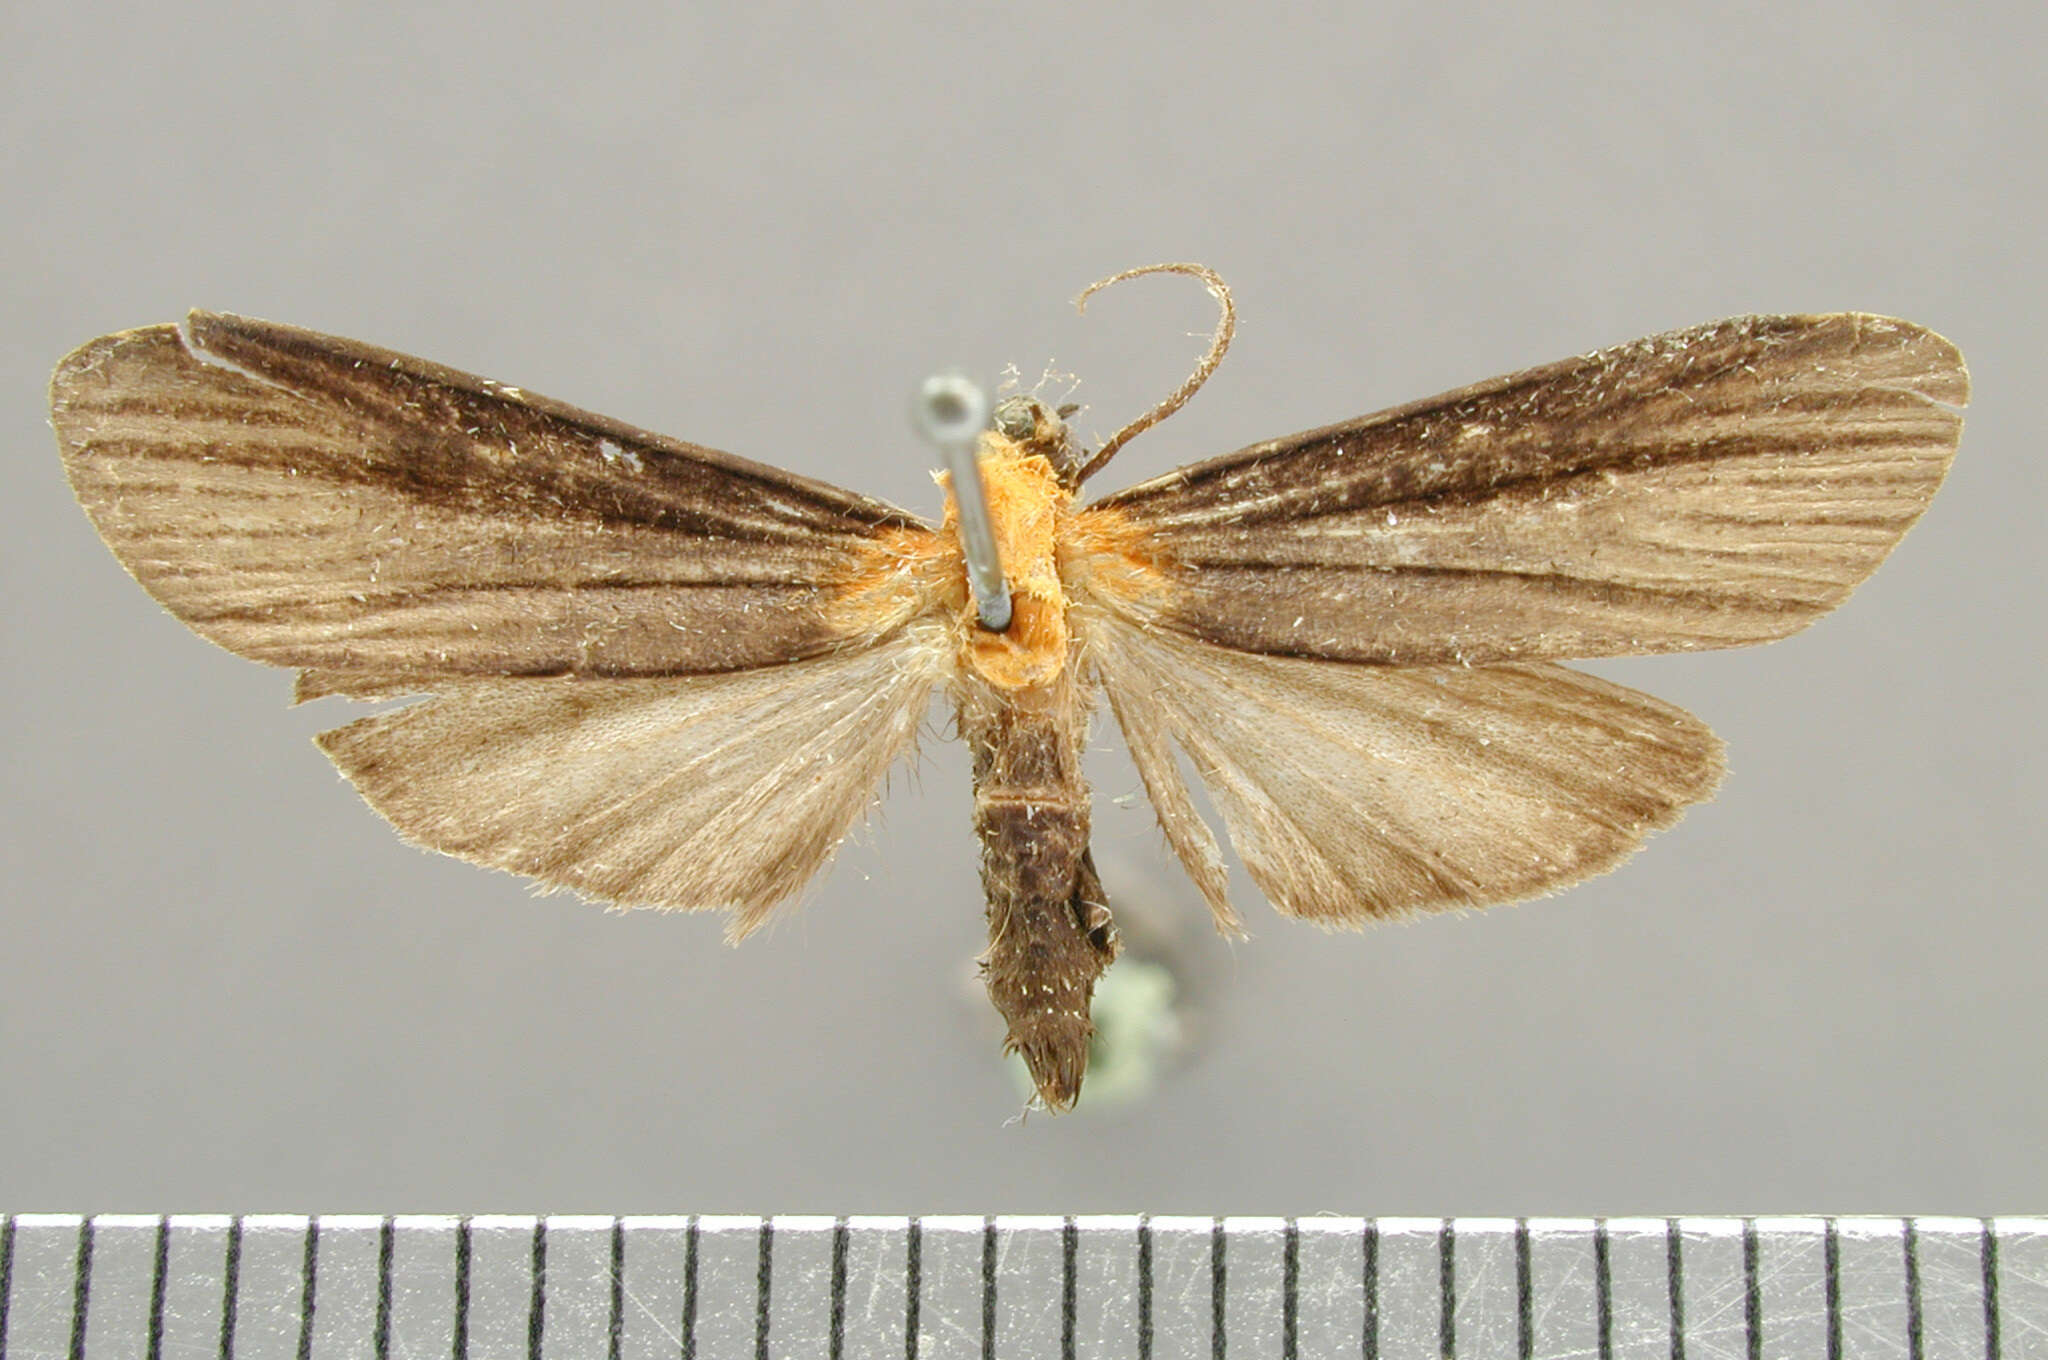 Sivun Ardonea judaphila Schaus 1905 kuva